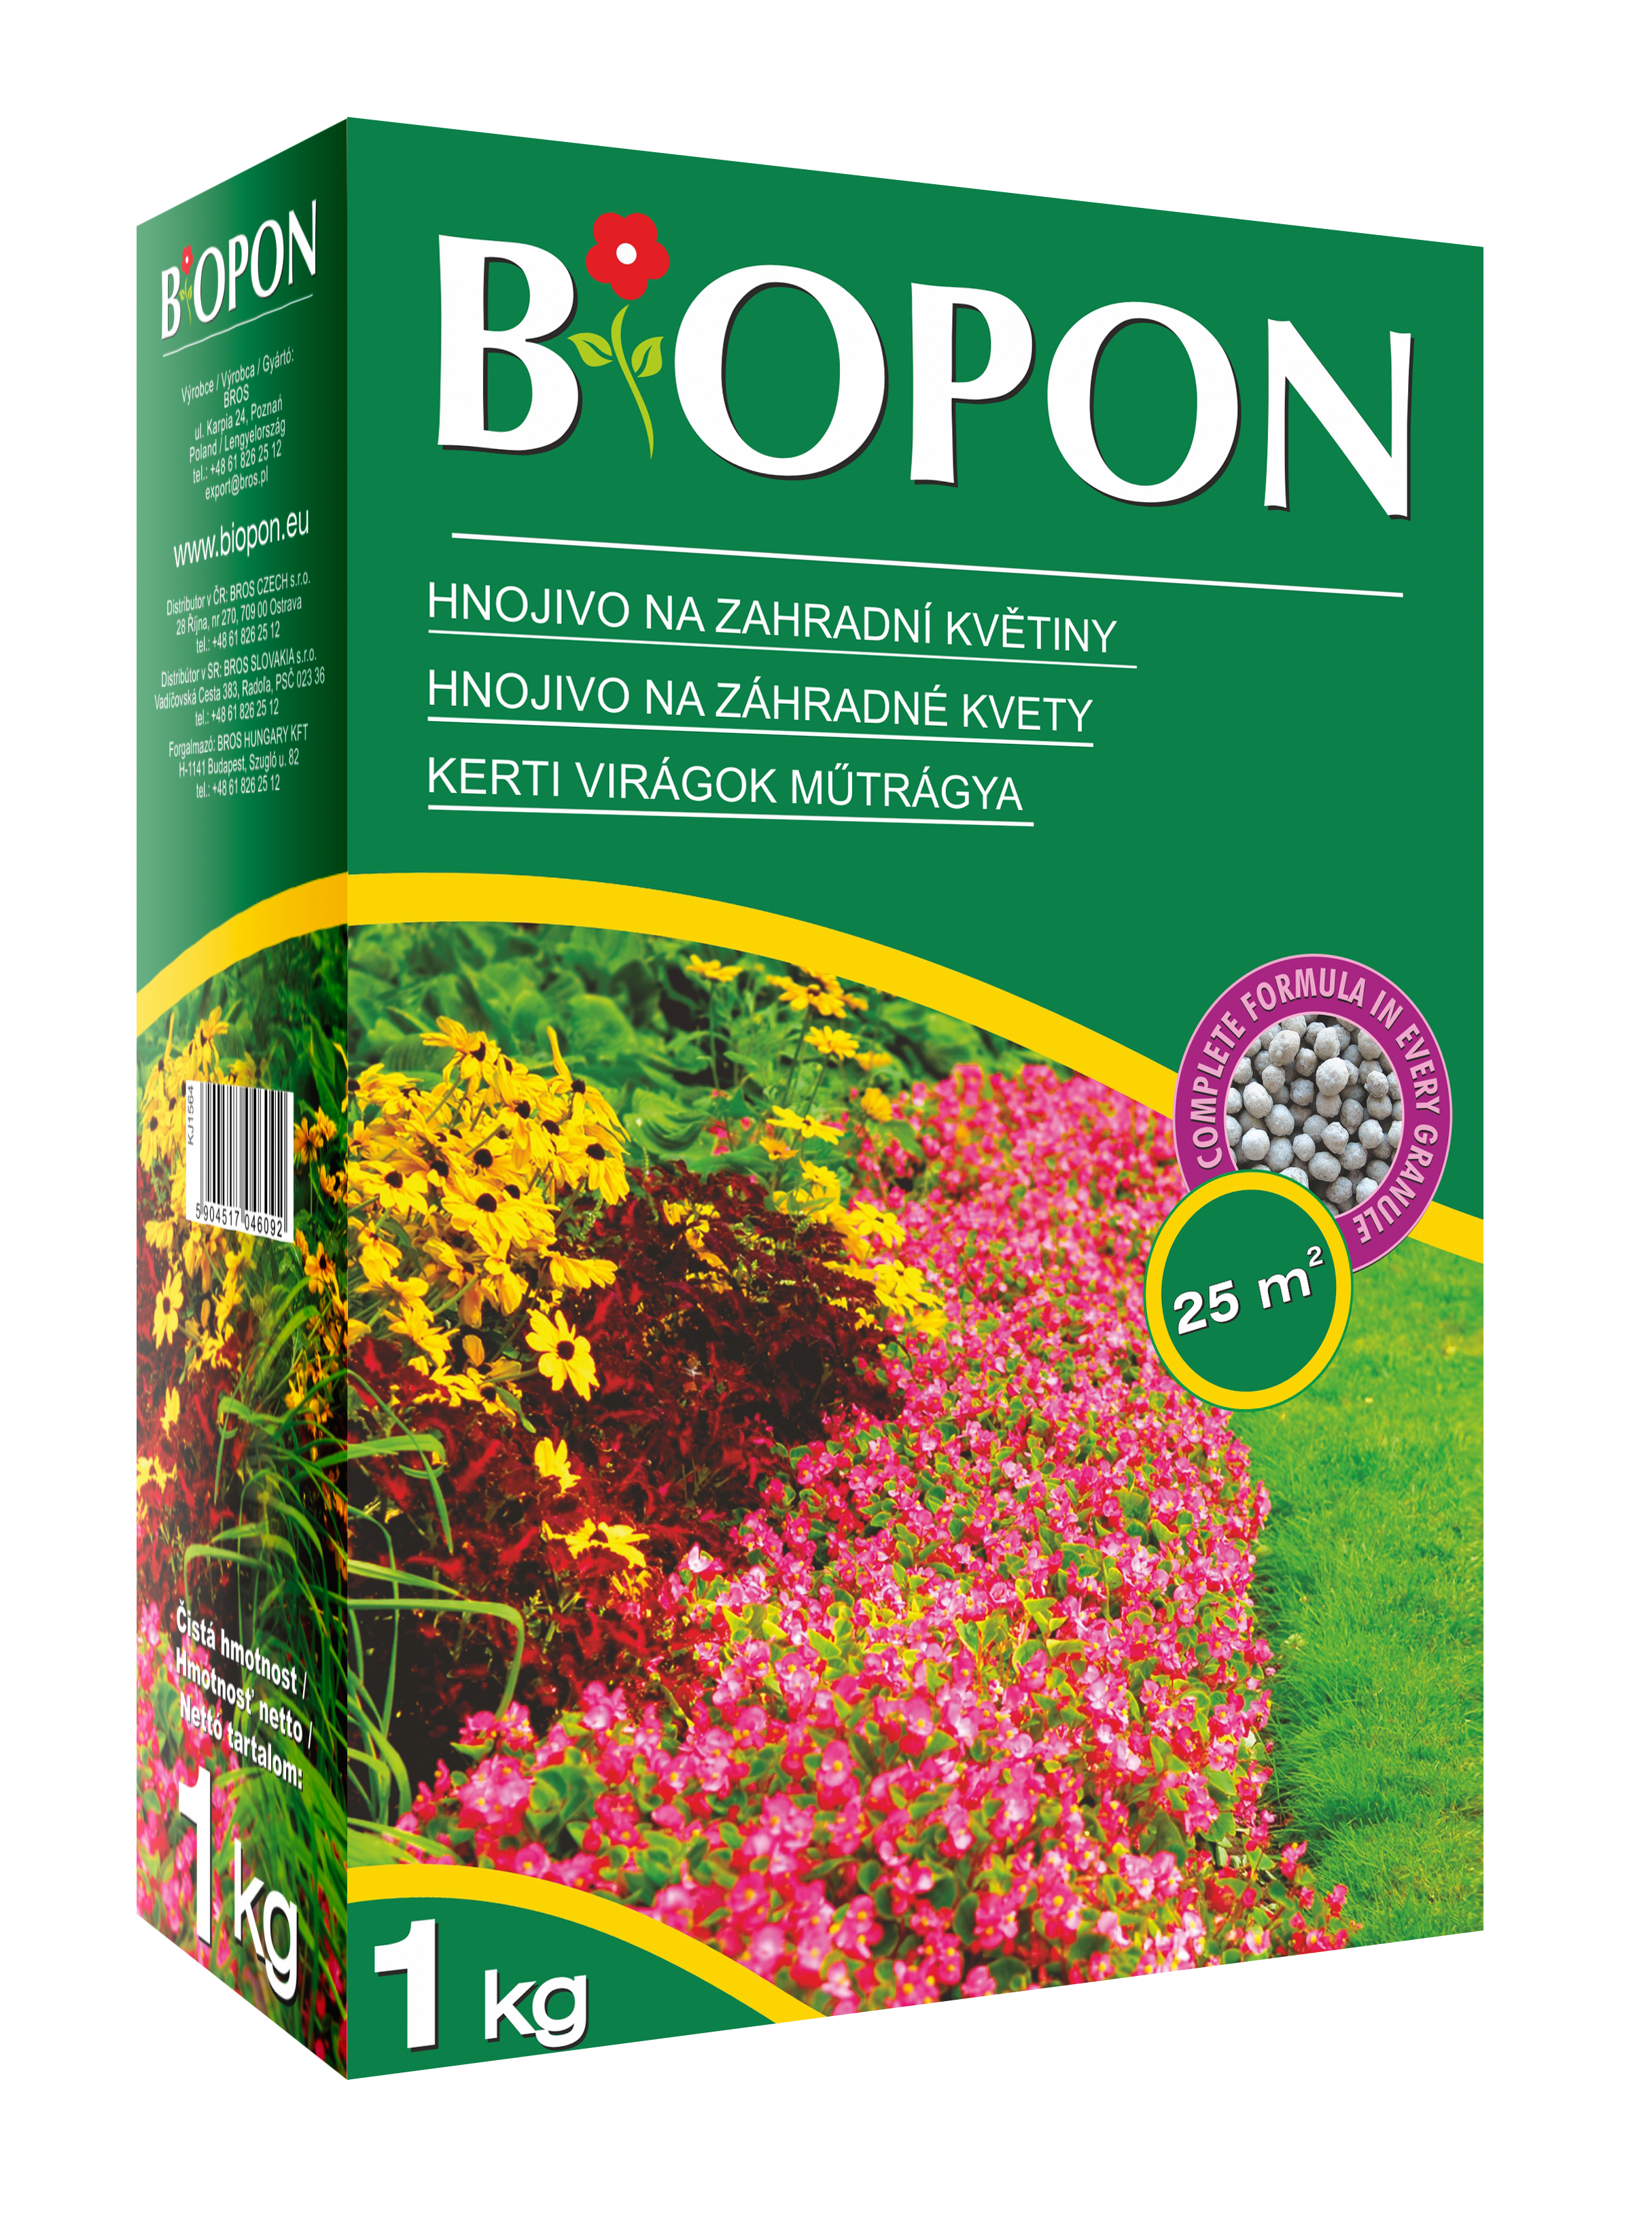 Biopon műtrágya kerti virágokhoz 1 kg